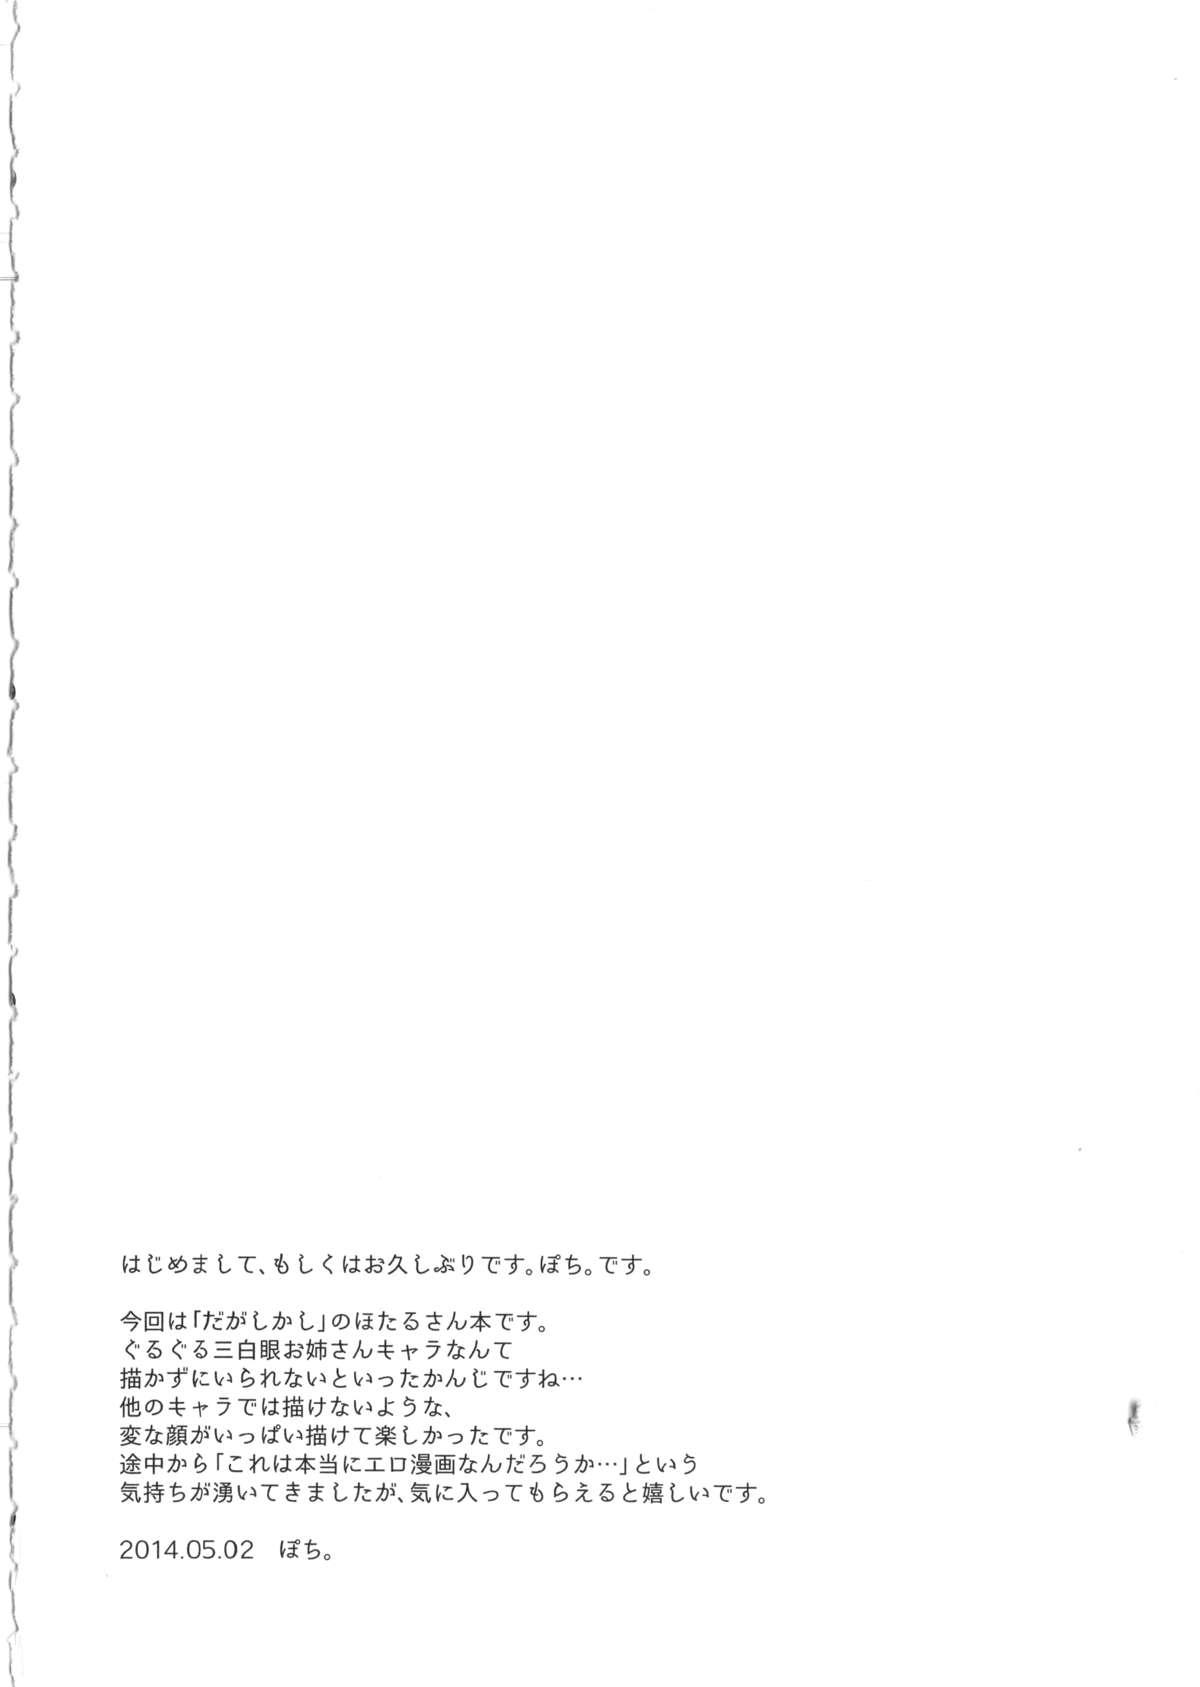 Collar Otona no dagashi - Dagashi kashi Vergon - Page 3